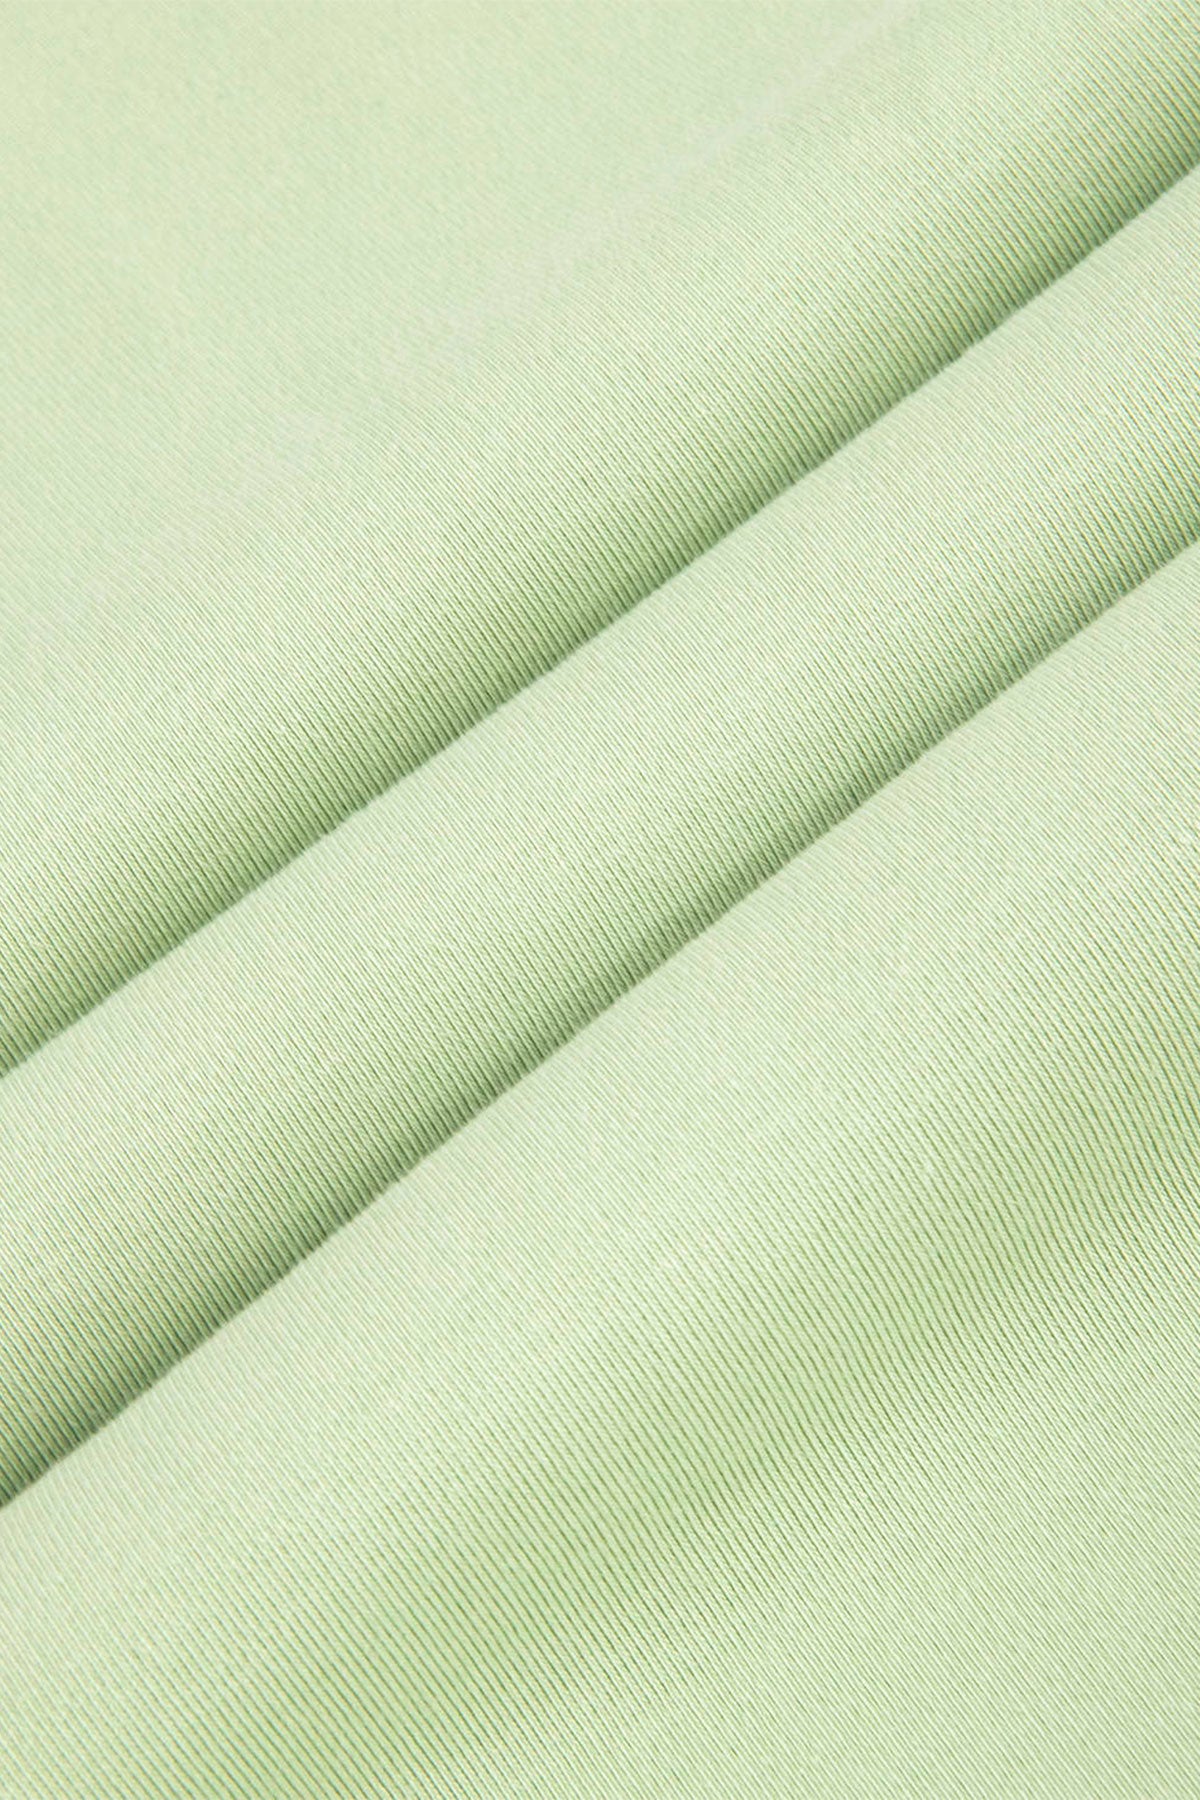 Strijkvrij Poloshirt - Green Lemon - Polo - Vercate - Vercate - Overhemden - Strijkvrije overhemden - Heren - herenkleding